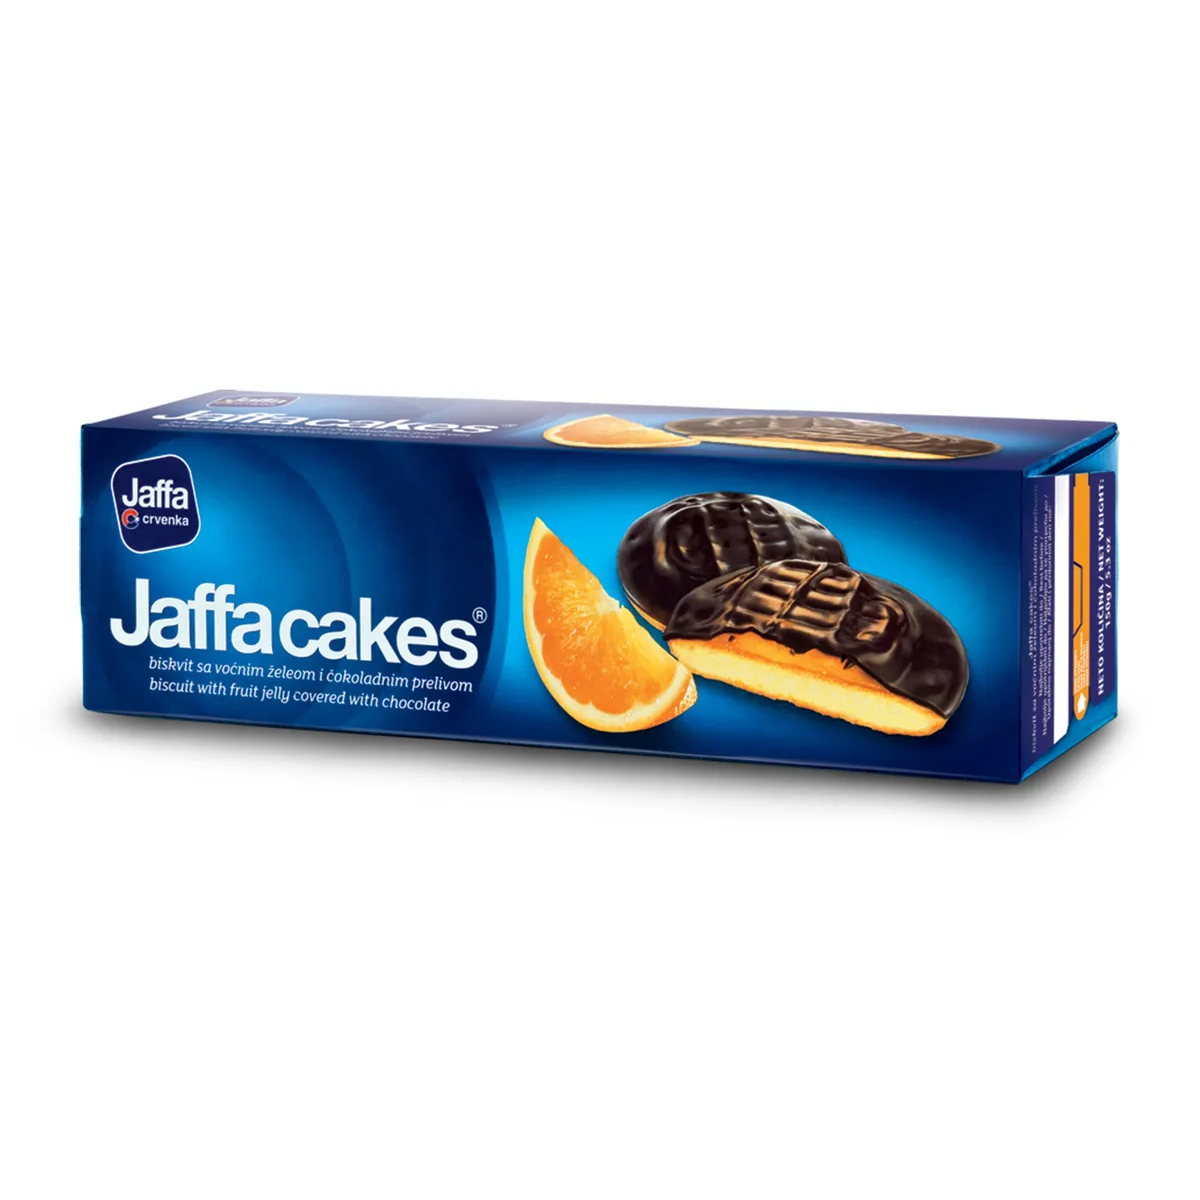 Печенье бисквитное Jaffa cakes Апельсин, 150 г печенье бисквитное jaffa crvenka с вишневым желе покрытое шоколадом 155 г